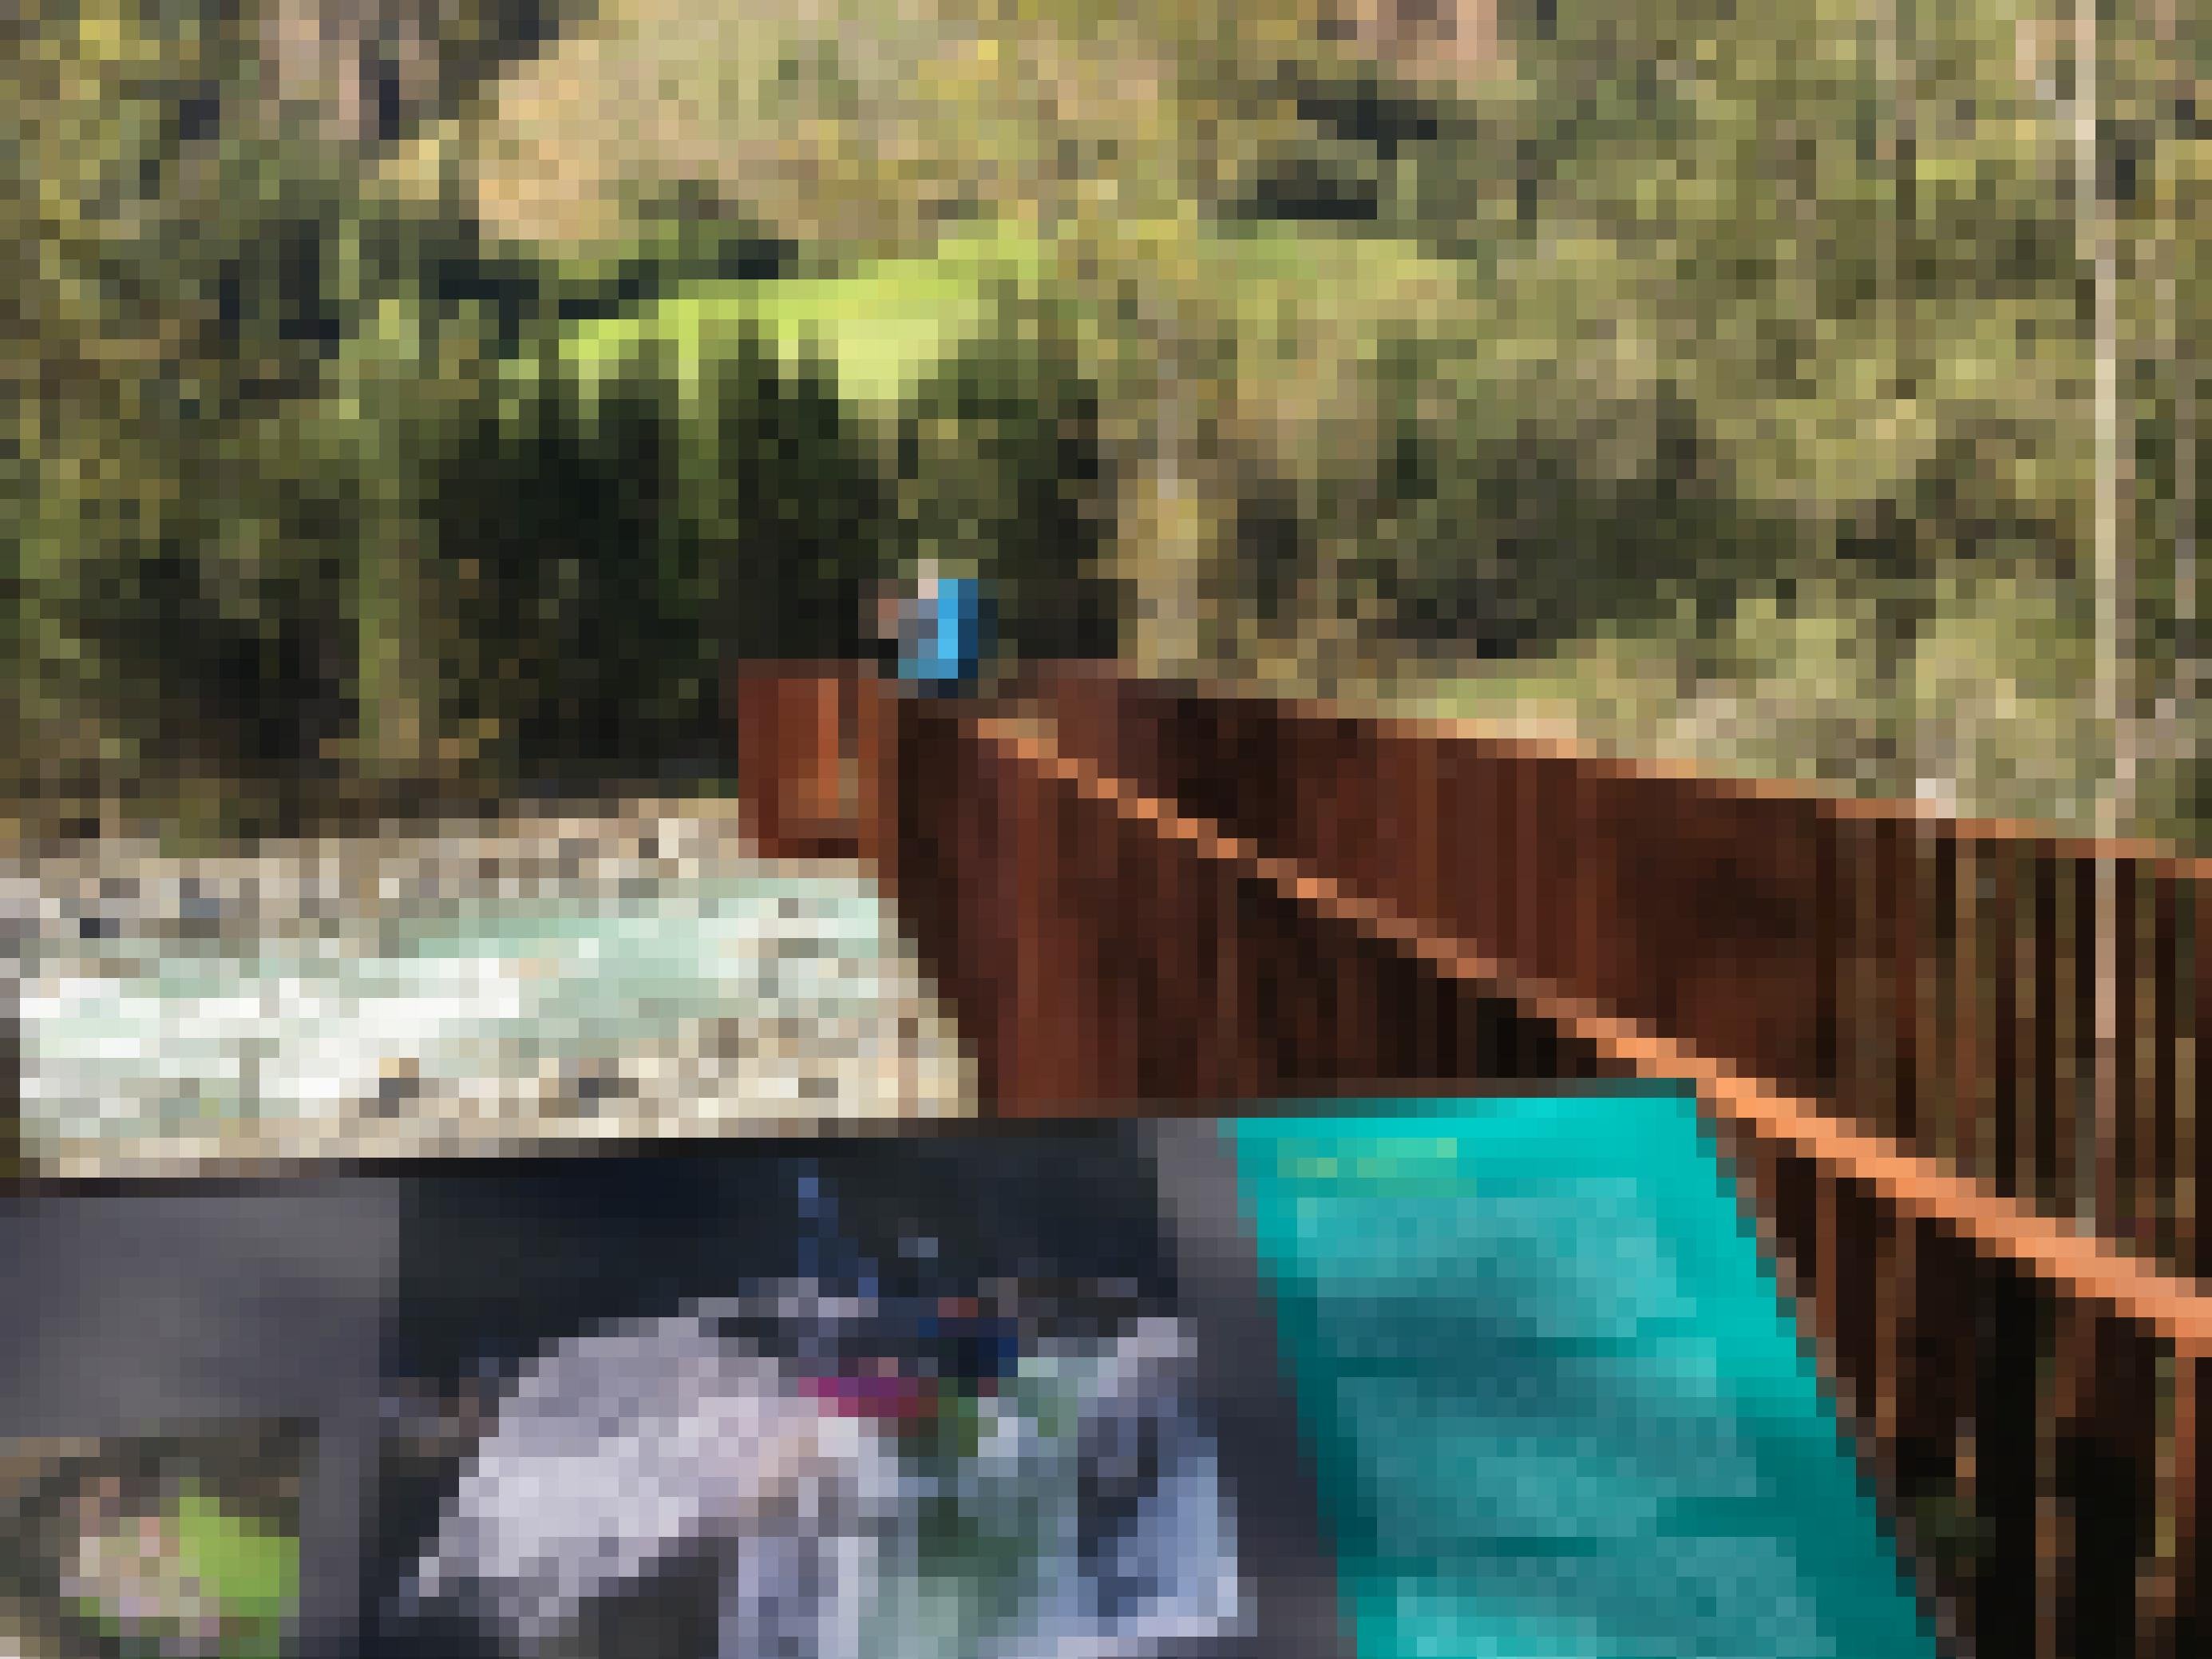 Steg aus rostrotem Stahl mit Blick auf den türkisgrünen Fluss. Darauf ein Mann, der fotografiert.